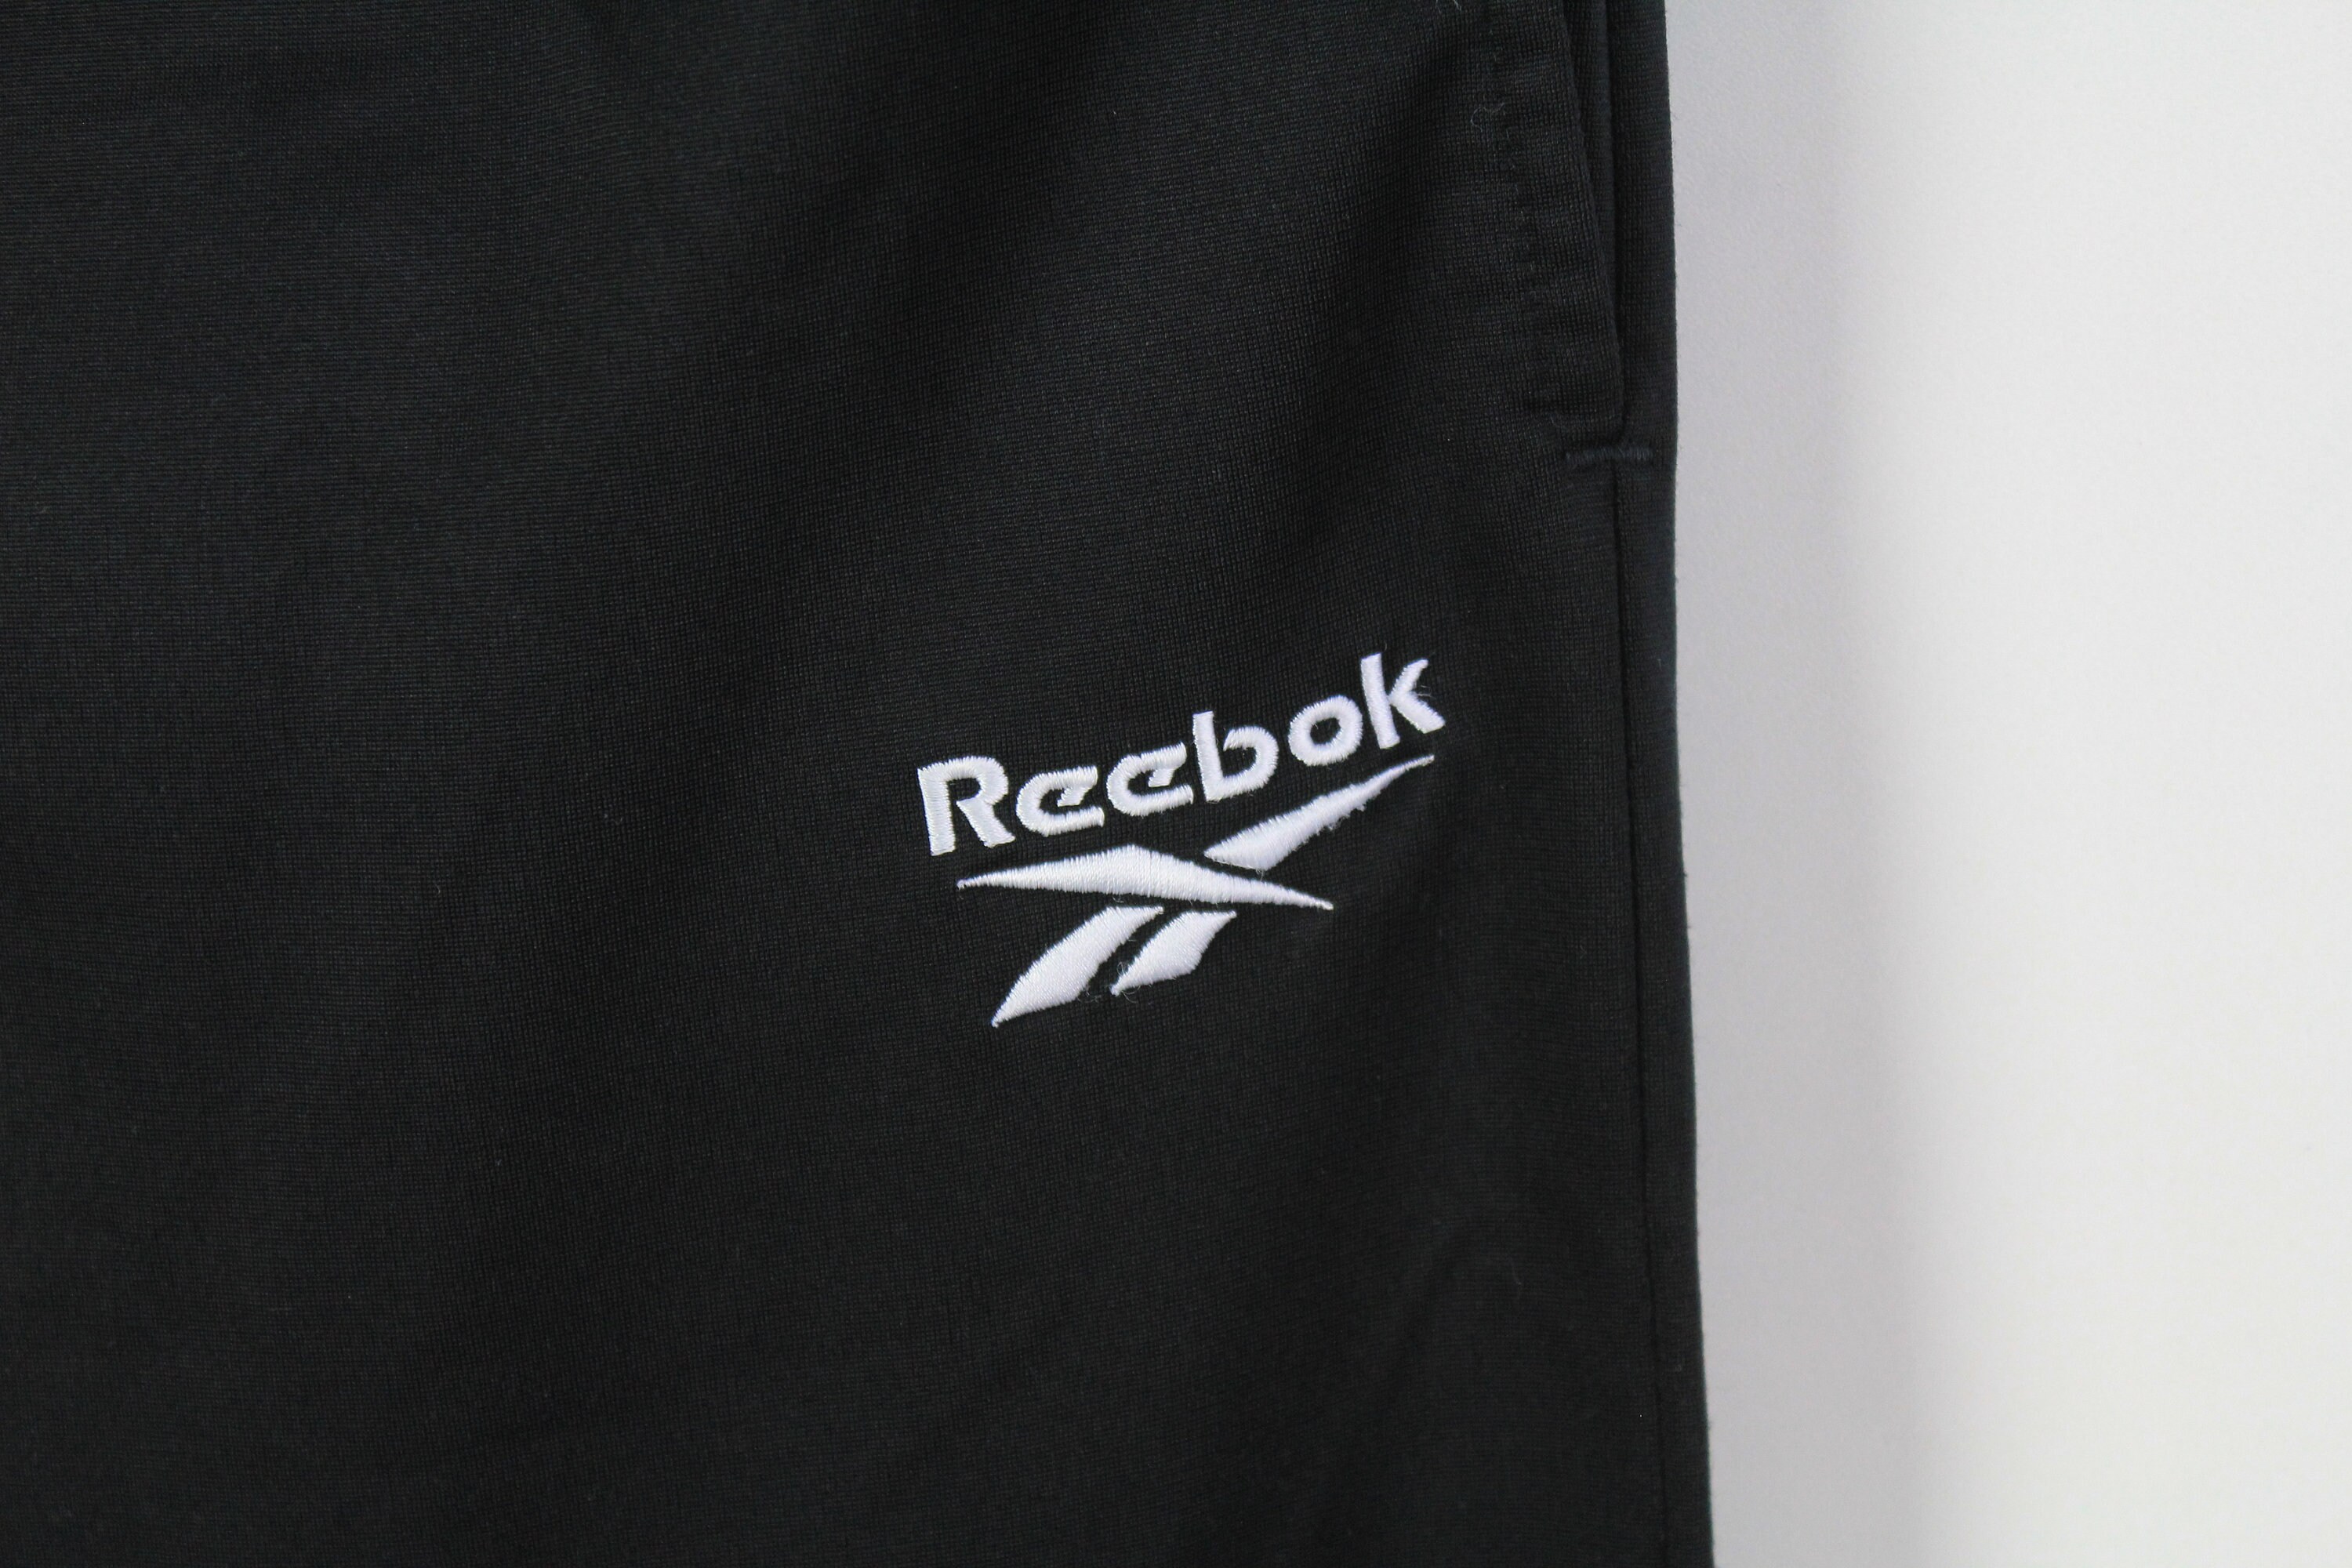 Vintage REEBOK Tracksuit Size S Oversize Retro Sport Clothing - Etsy